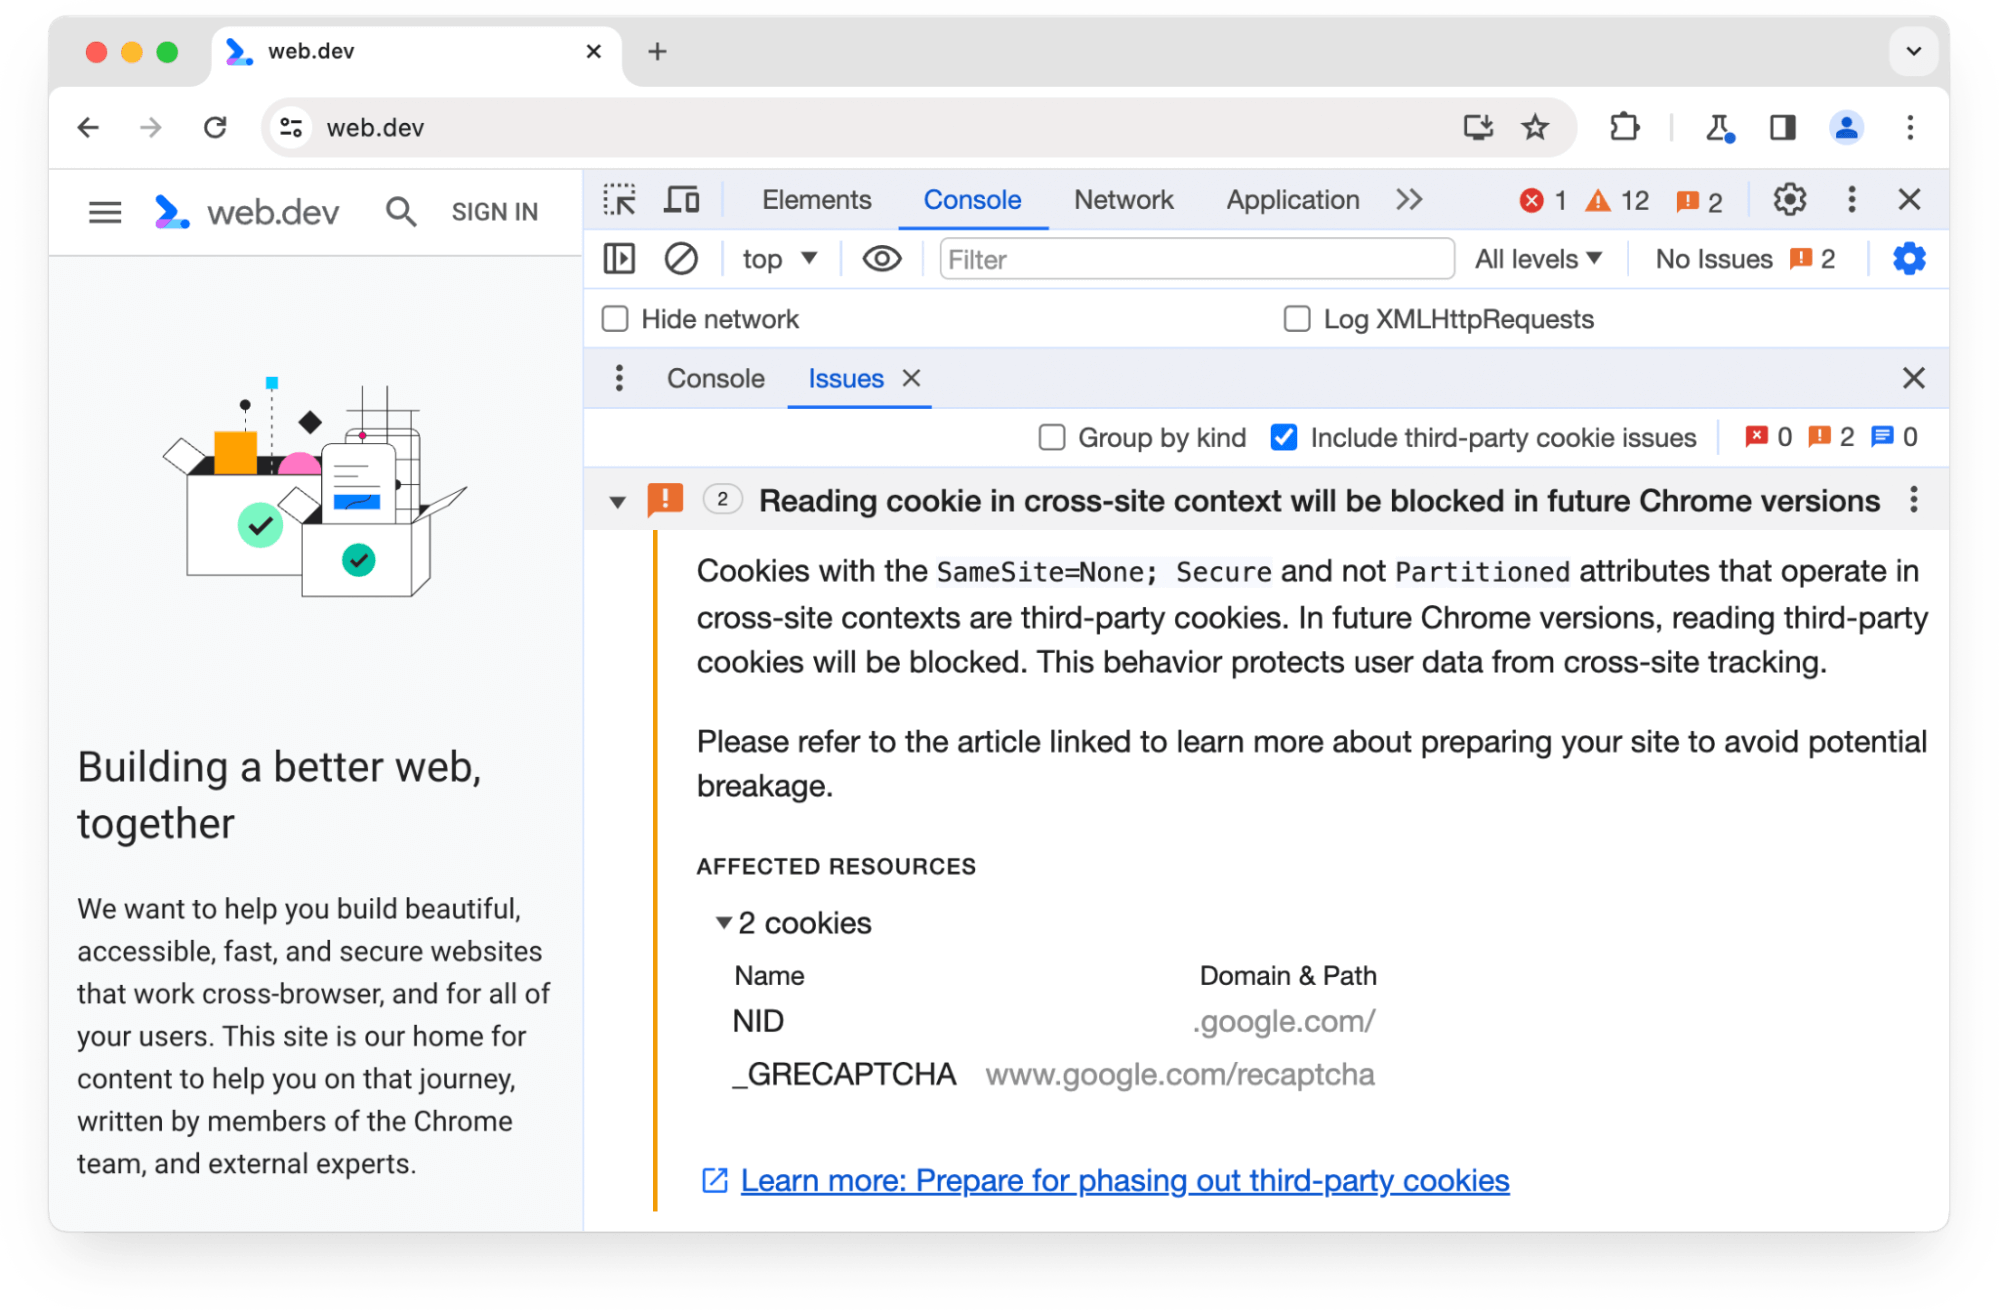 Chrome DevTools の [Issues] パネルに、Chrome の今後のバージョンでブロックされる 2 つのサードパーティ Cookie に関する警告。